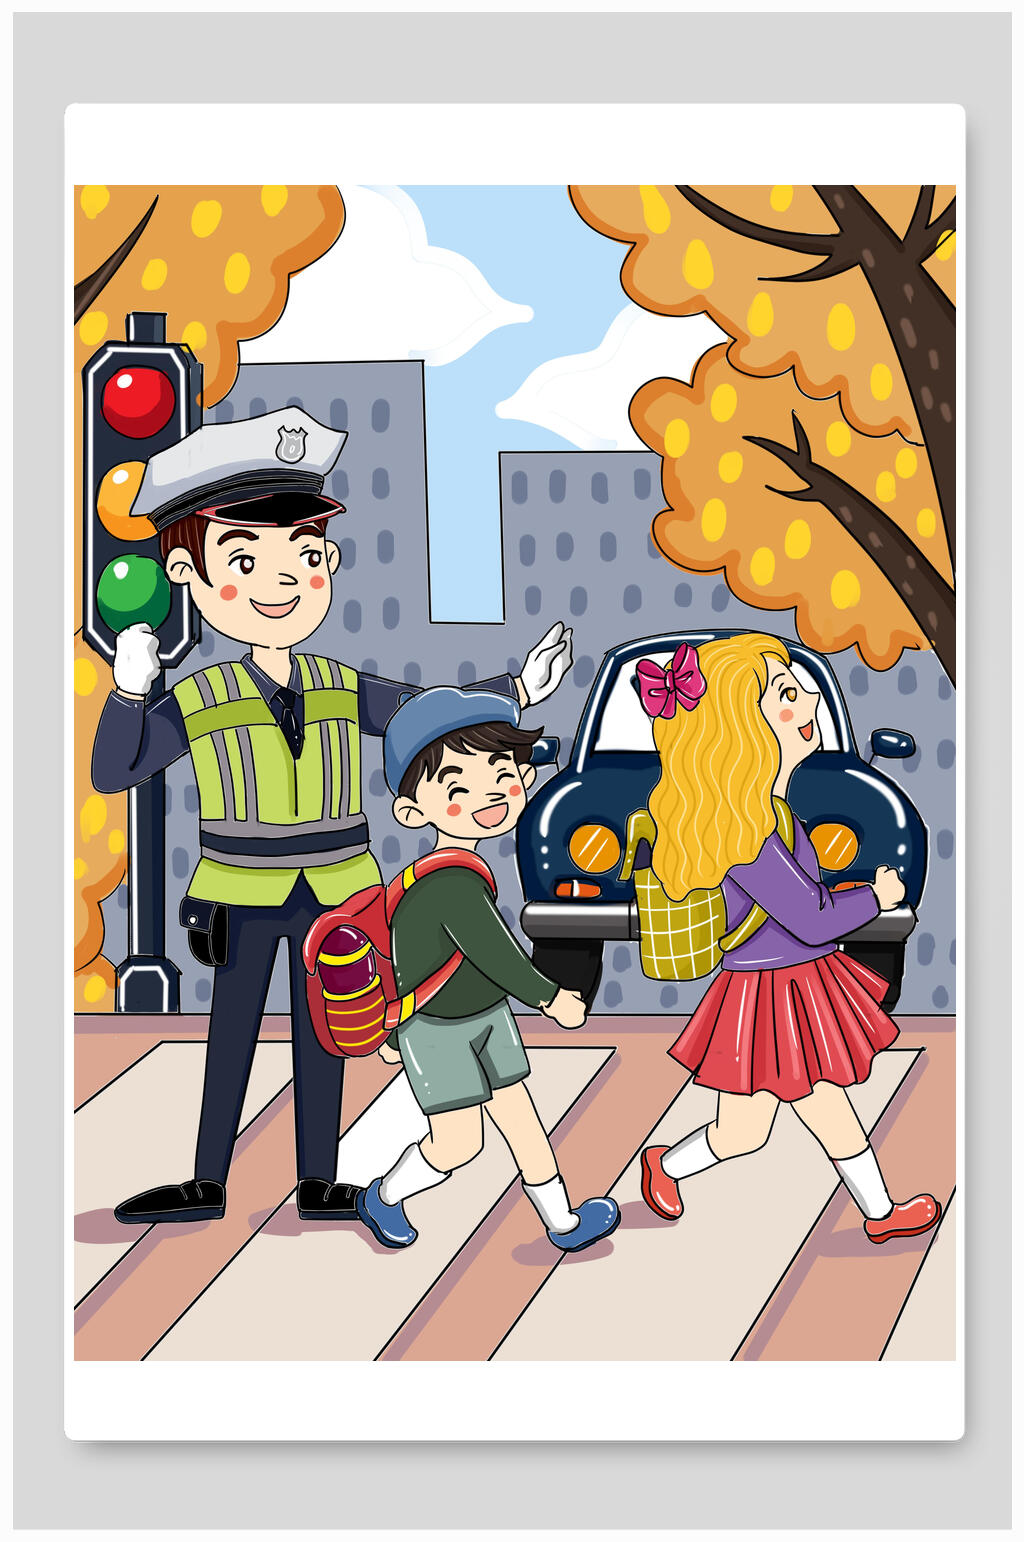 过马路警察创意高端可爱交通安全插画